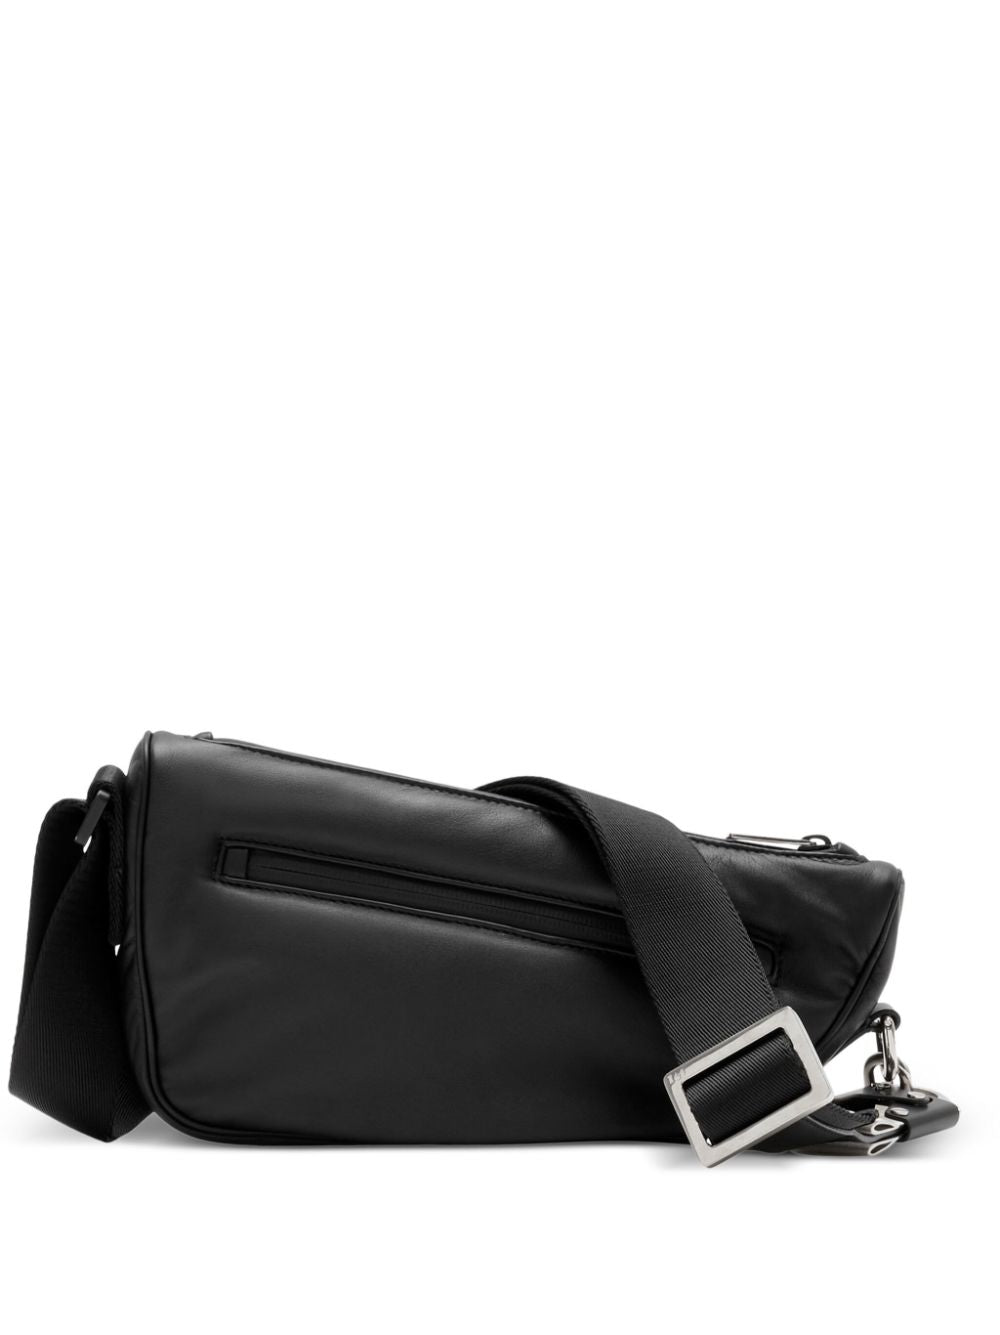 Men's Black Asymmetrical SHIELD Crossbody Handbag